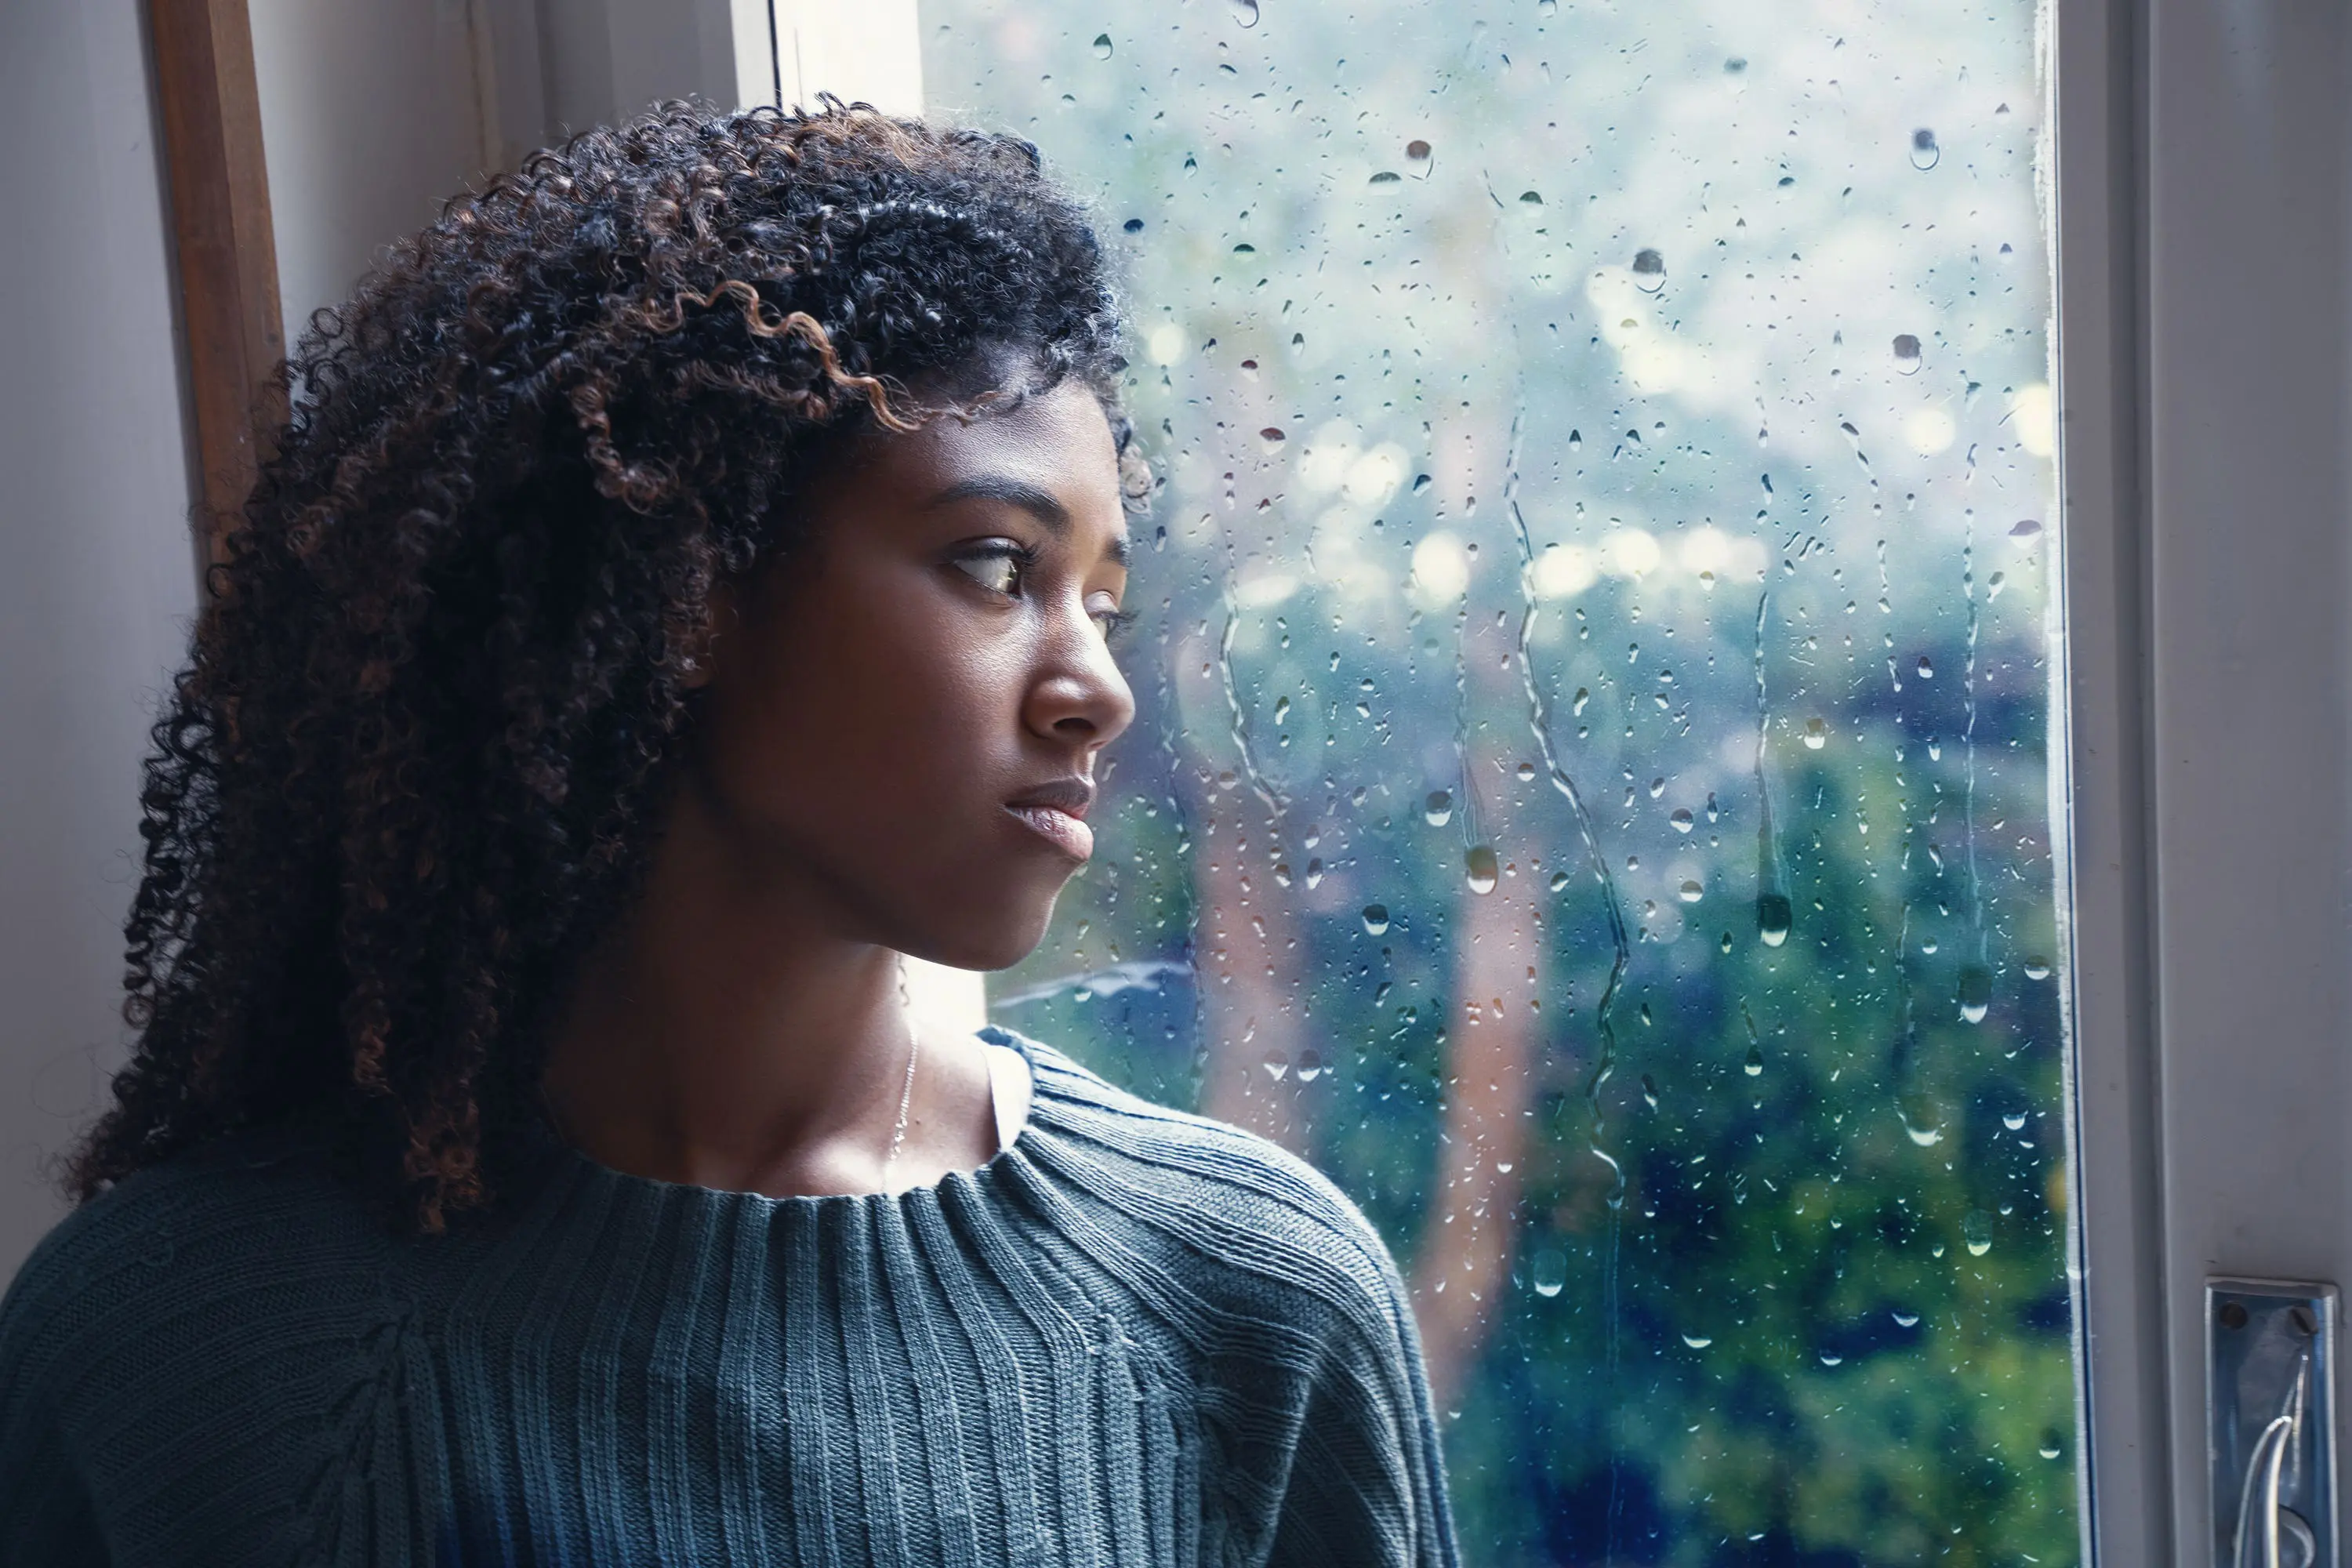 Woman looks sad by rainy window scaled